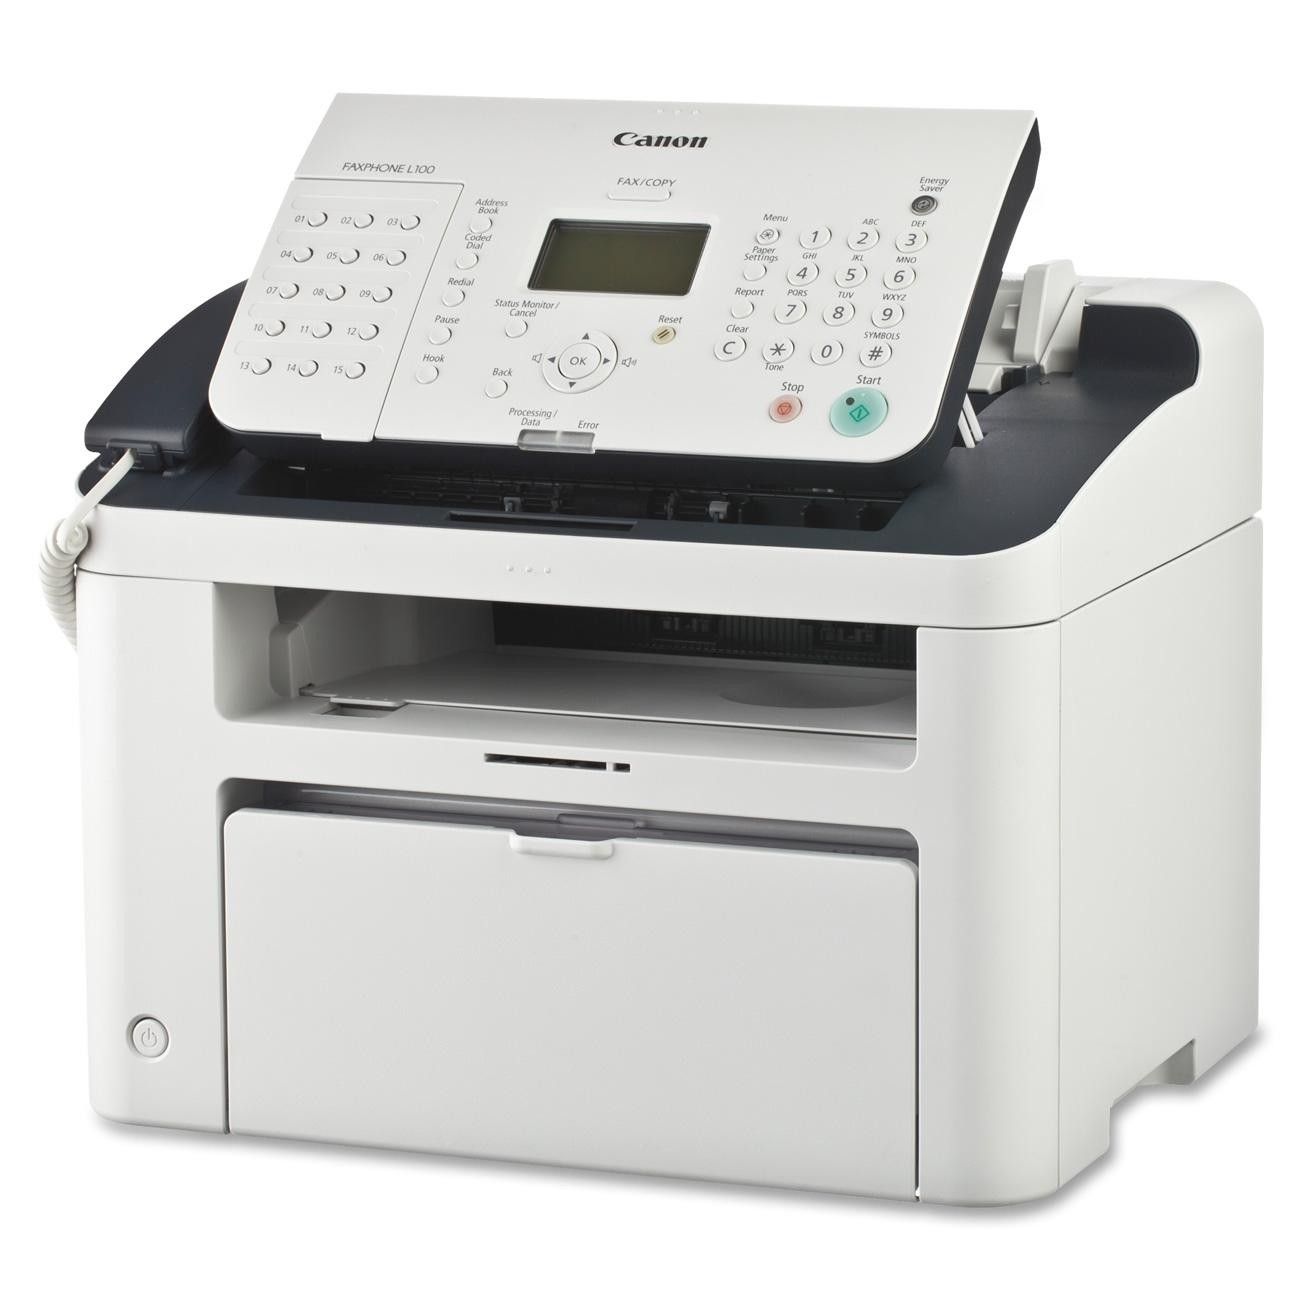 Canon imageclass d530 printer software